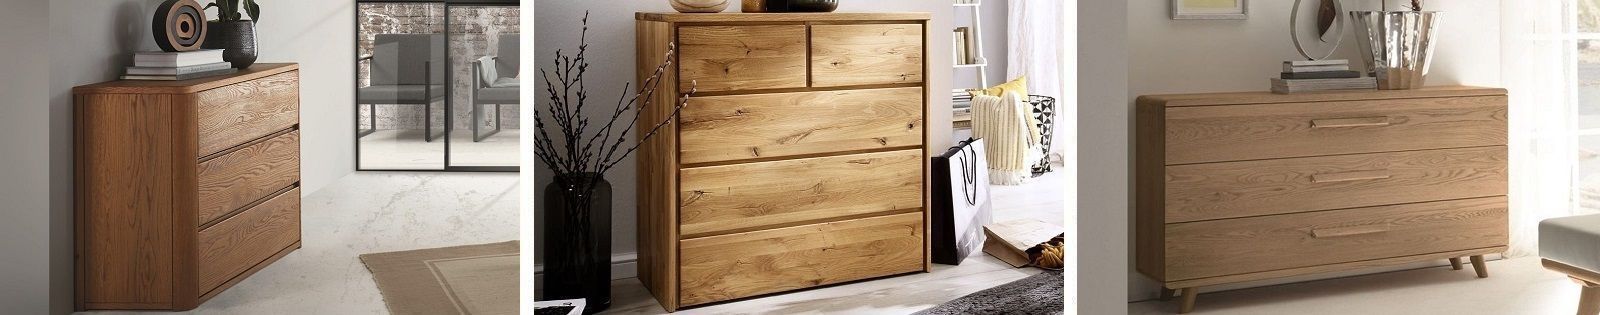 Commodes en bois massif - Mobilier en bois pour la chambre - Le monde du lit